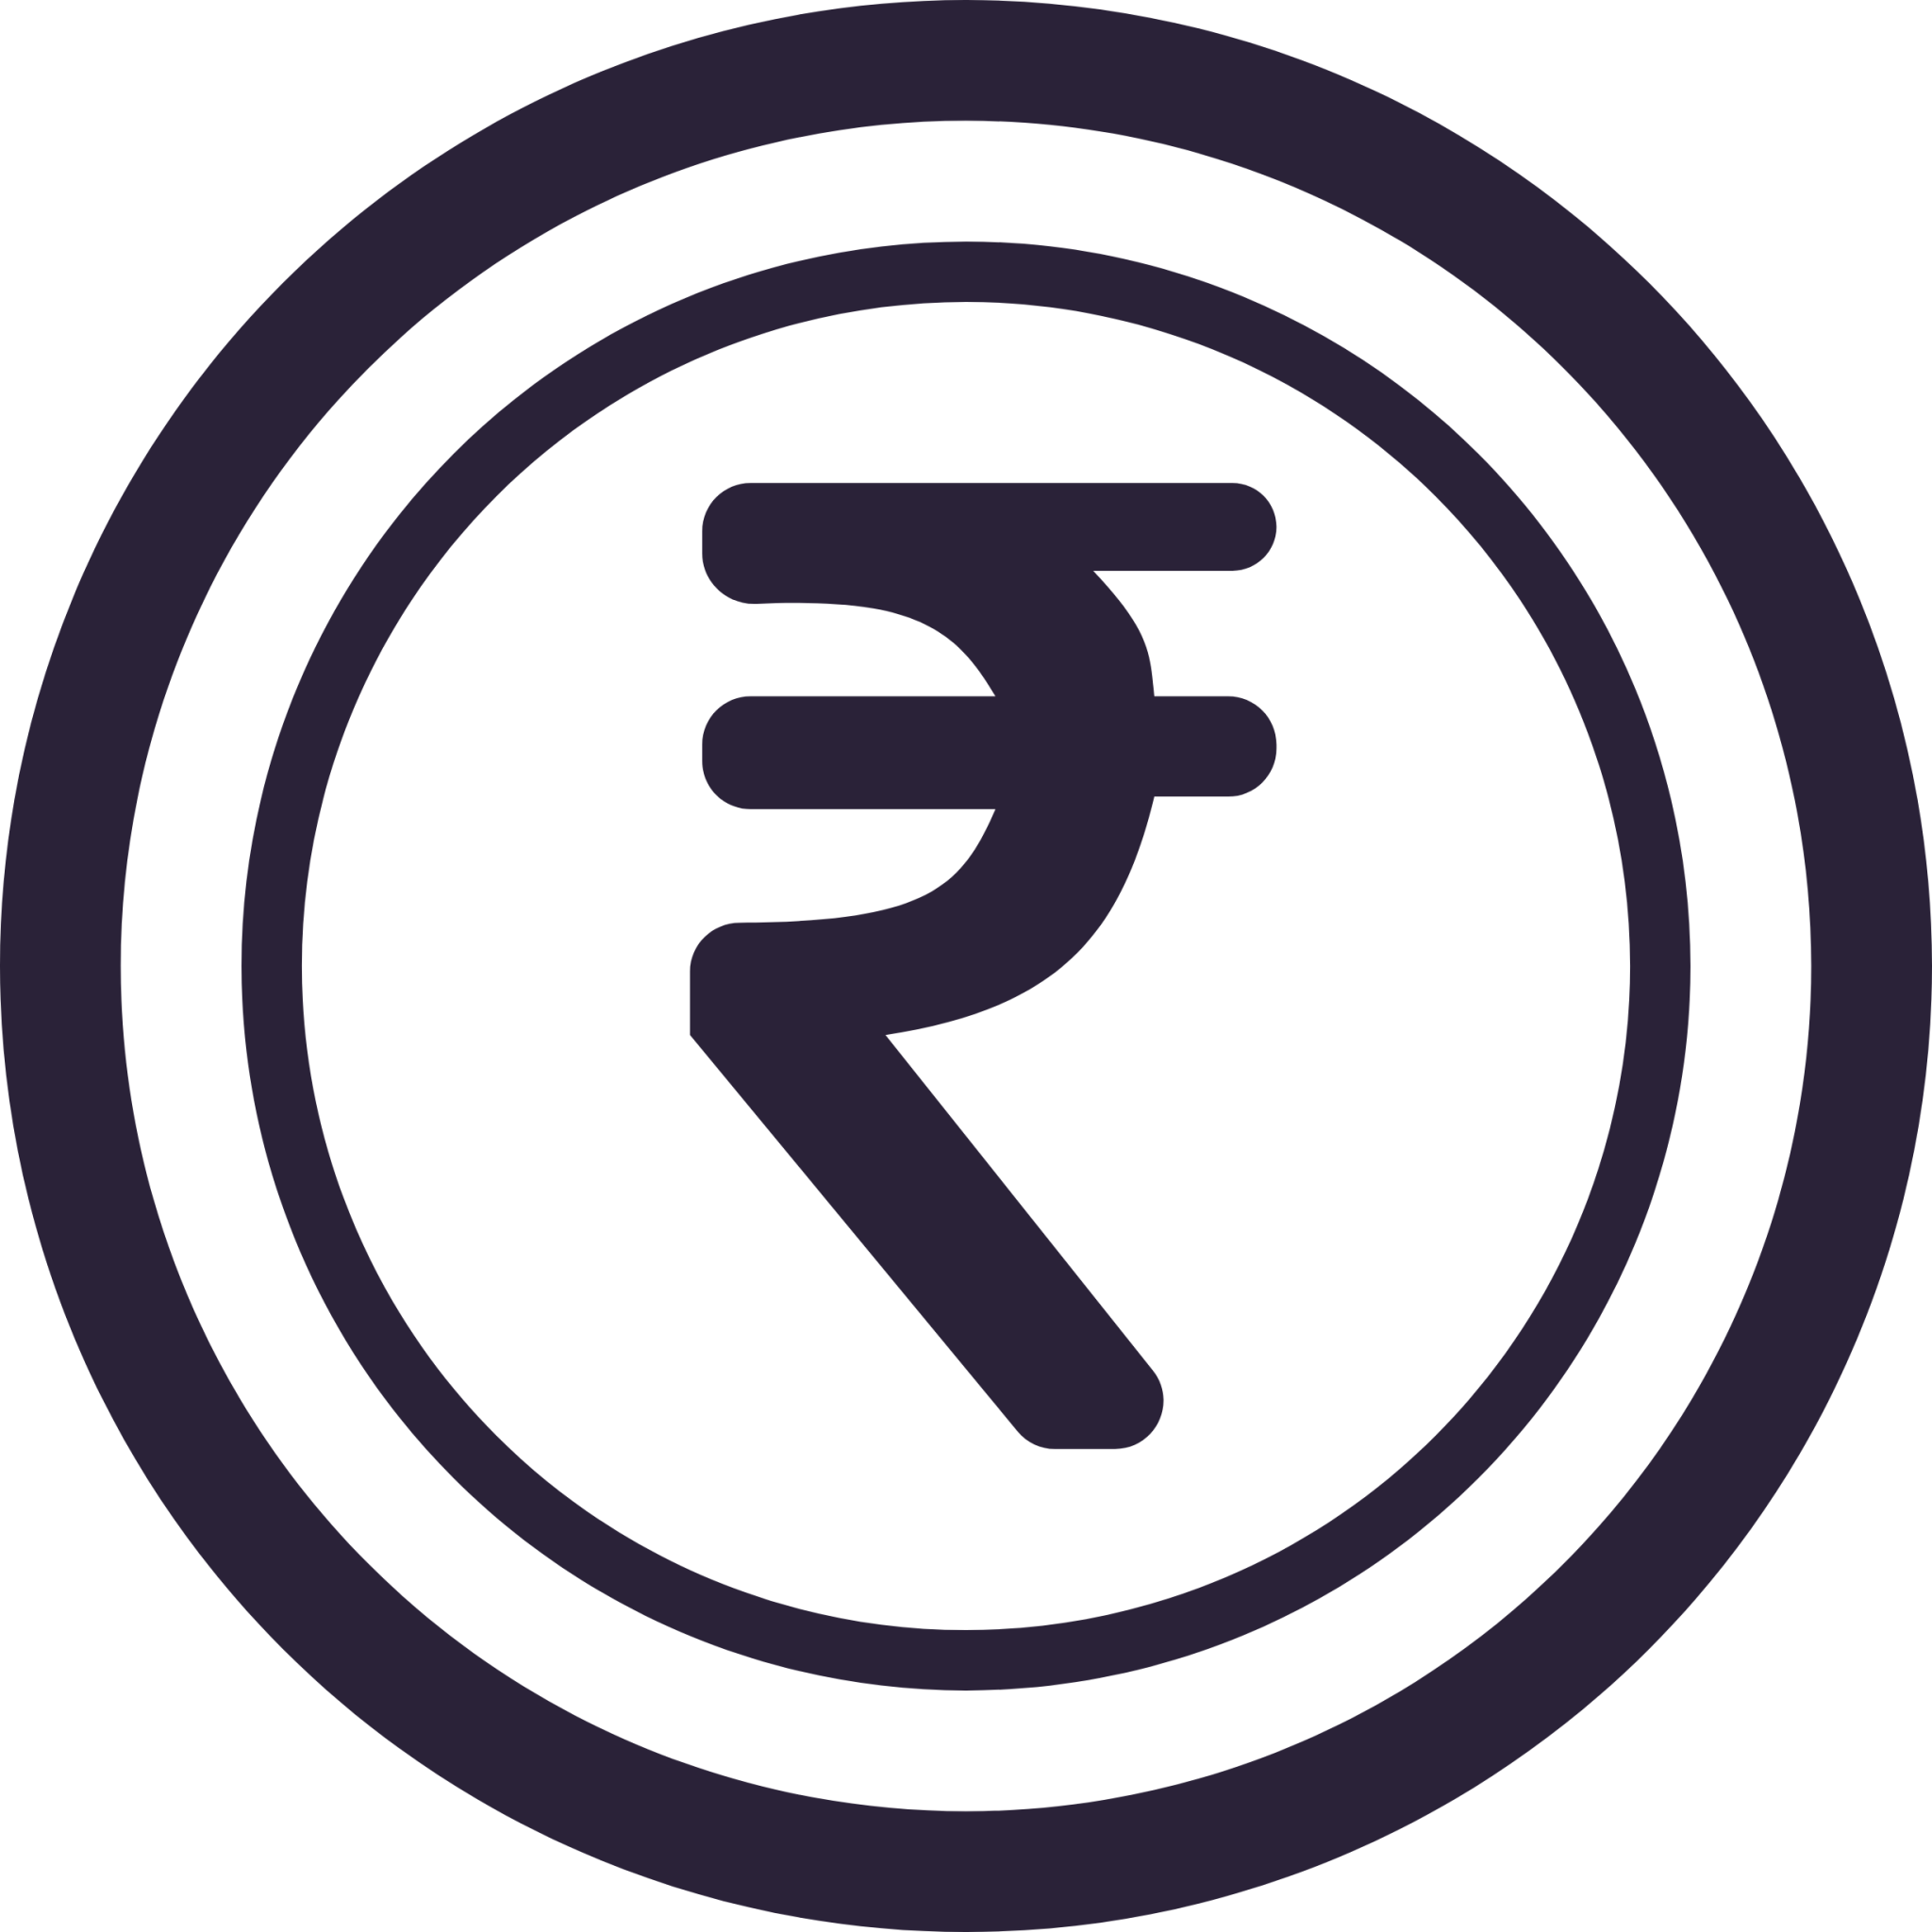 rupee coin icon